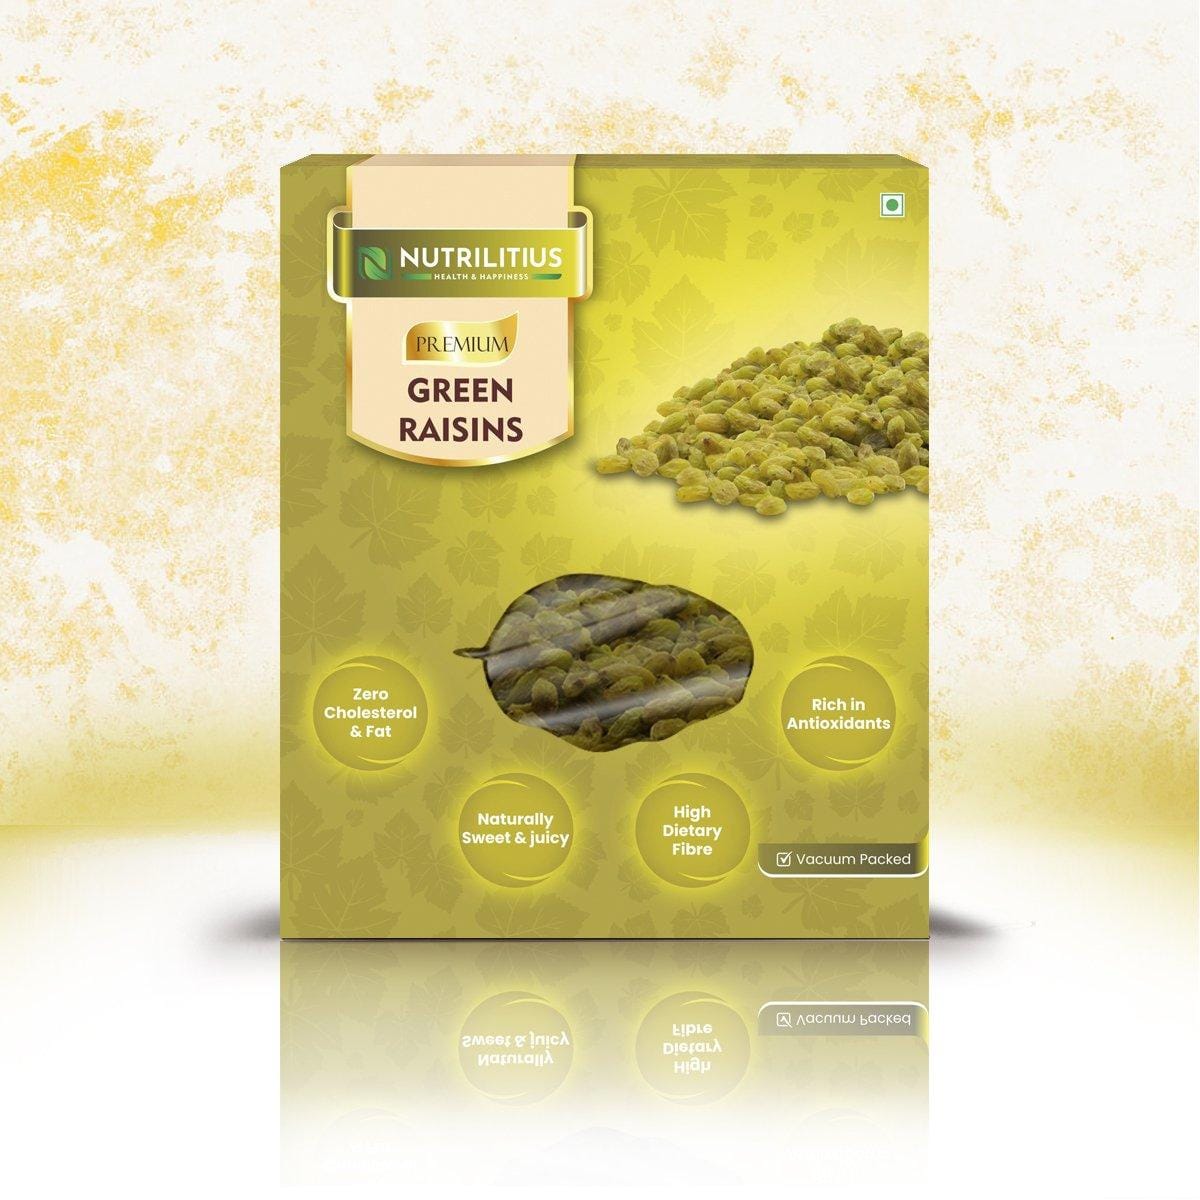 Nutrilitius Green Raisins - Nutrilitius